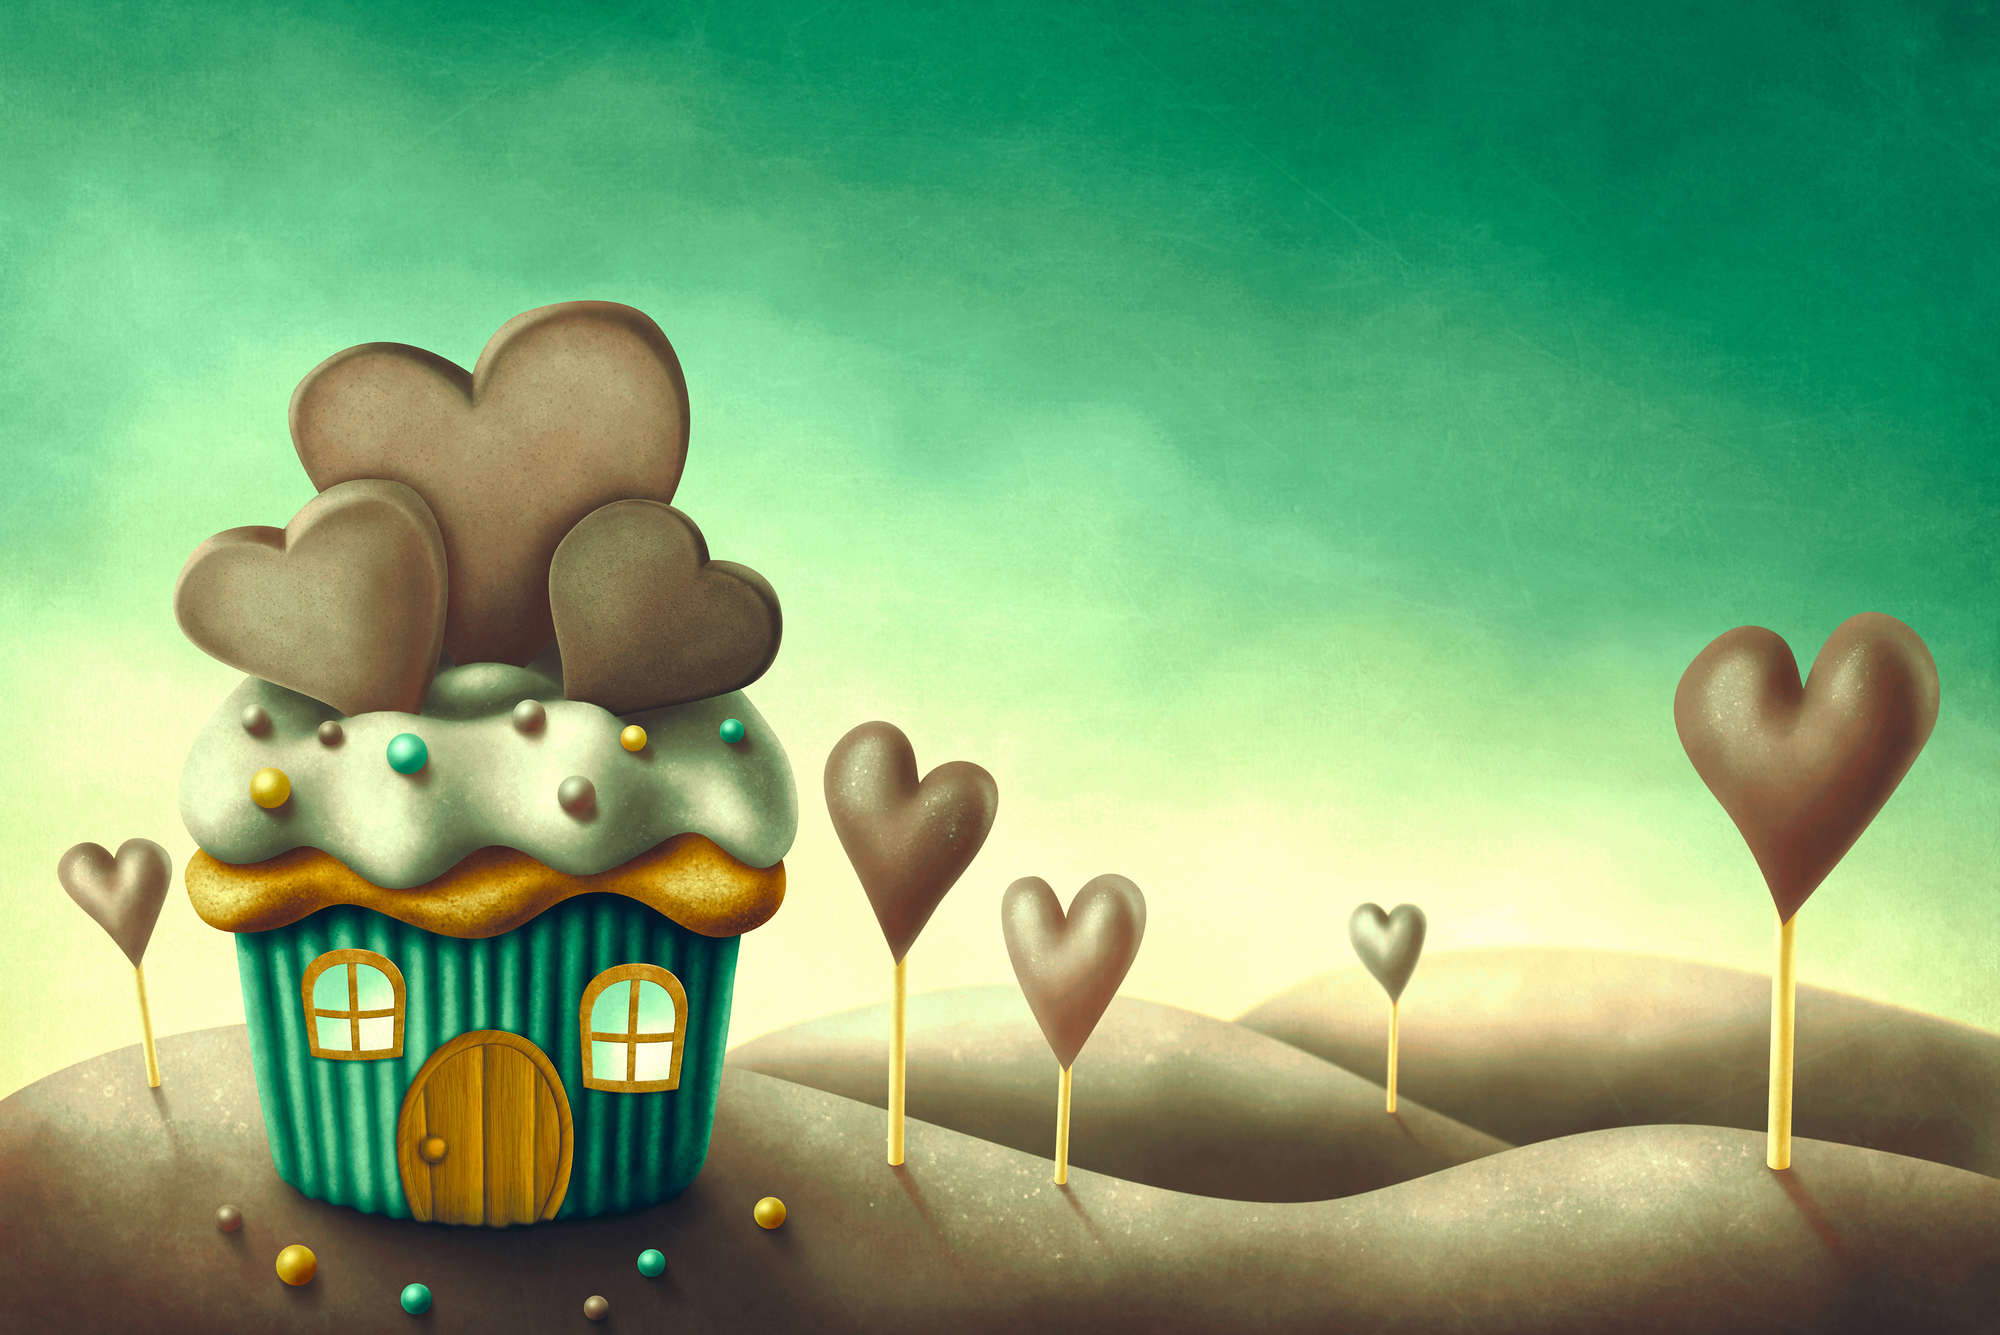             Mural infantil Muffin House en un mundo de caramelos sobre tela no tejida con textura
        